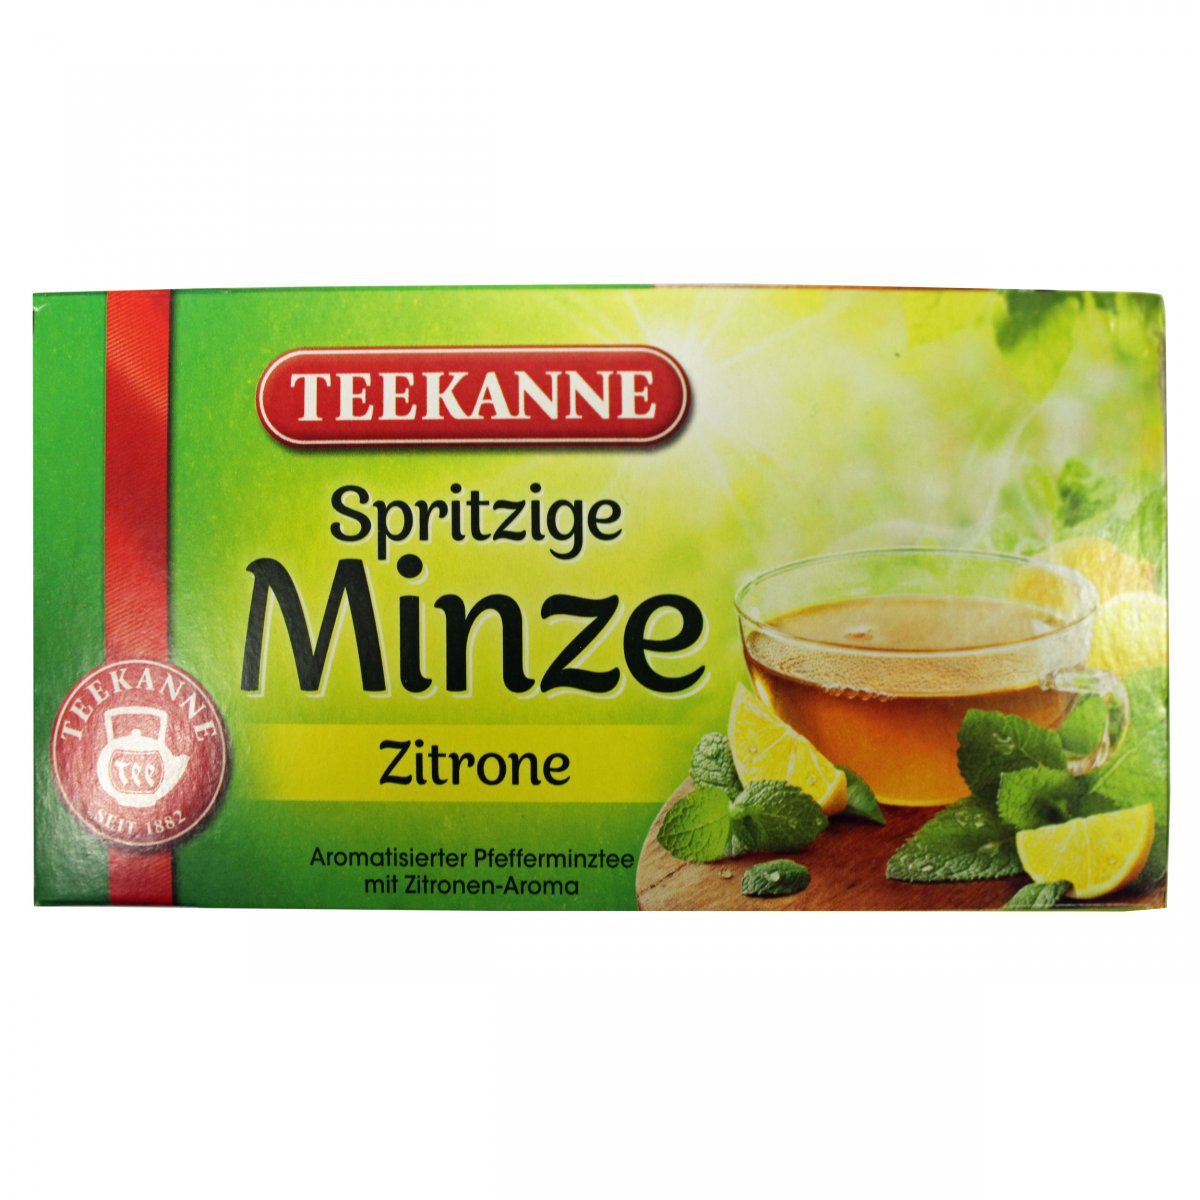 Teekanne- Spritzige Minze Zitrone (Peppermint European | Lemon) Grocery